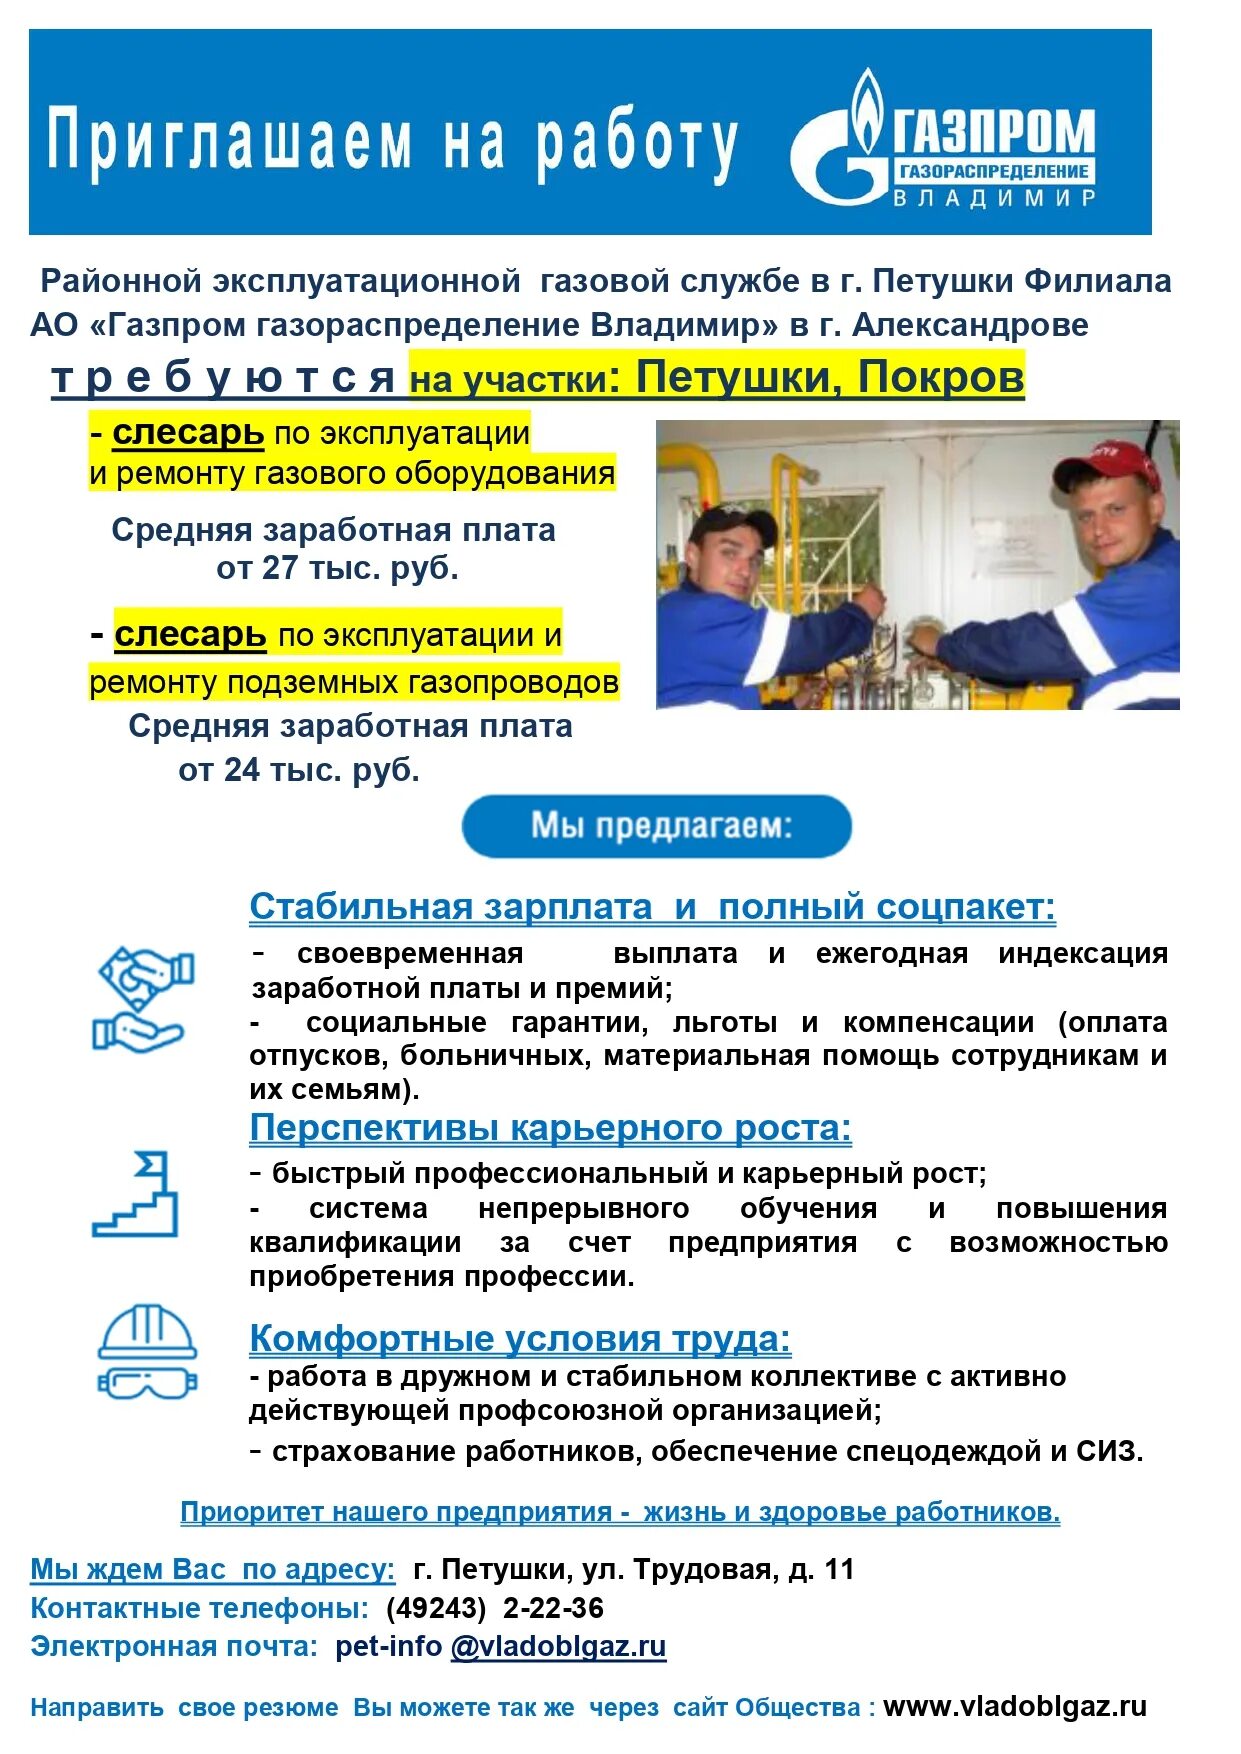 Работа в Газпроме вакансии.